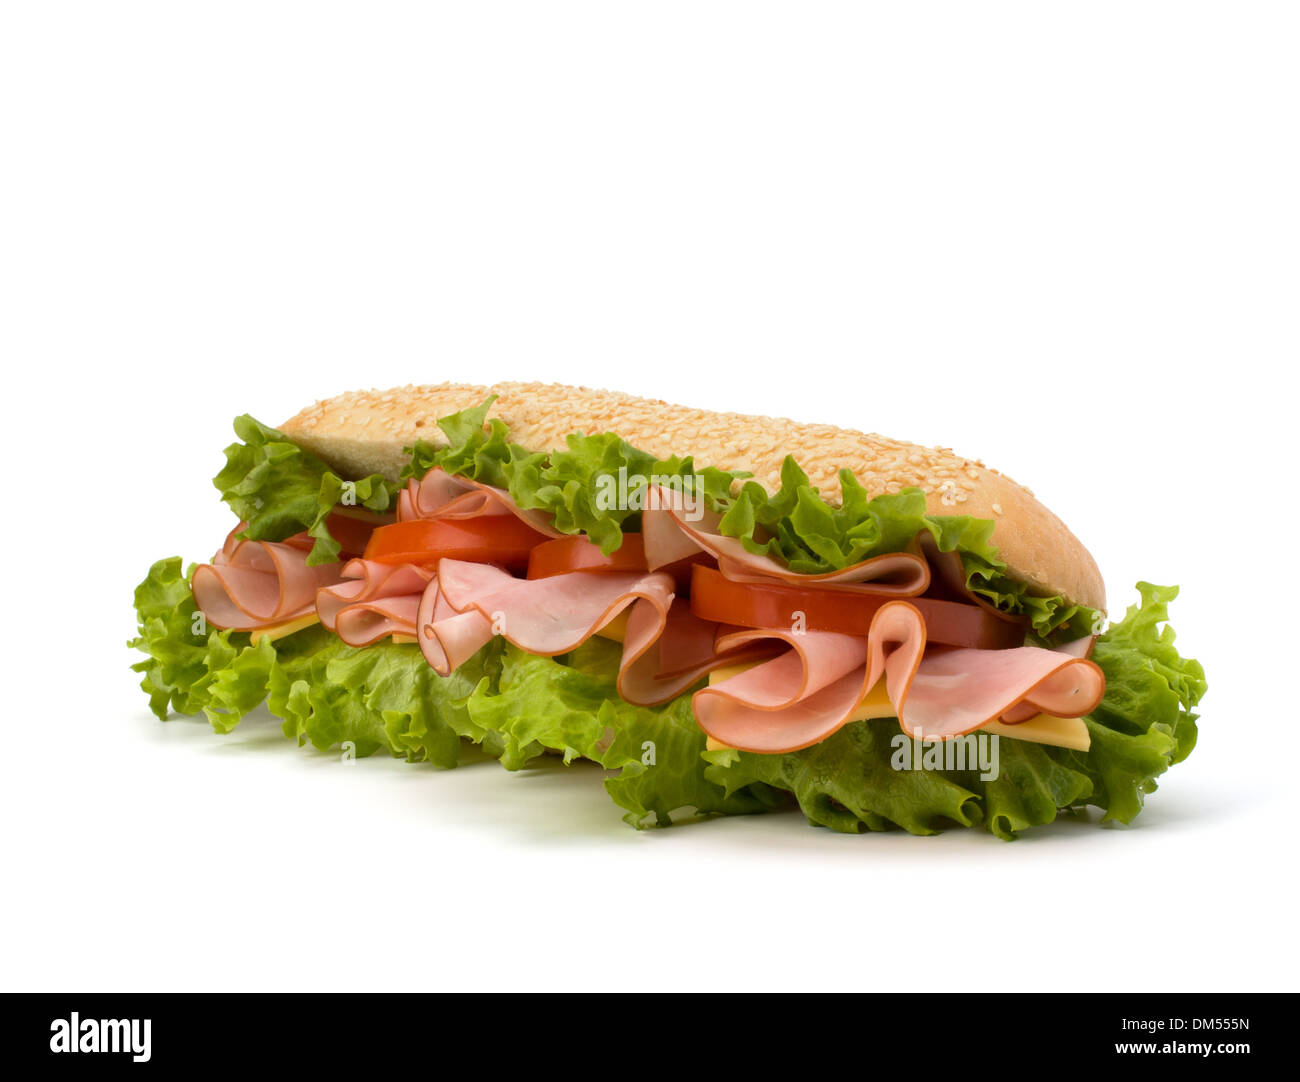 Fast-Food-Baguette-Sandwich mit Salat, Tomaten, Schinken und Käse Stockfoto